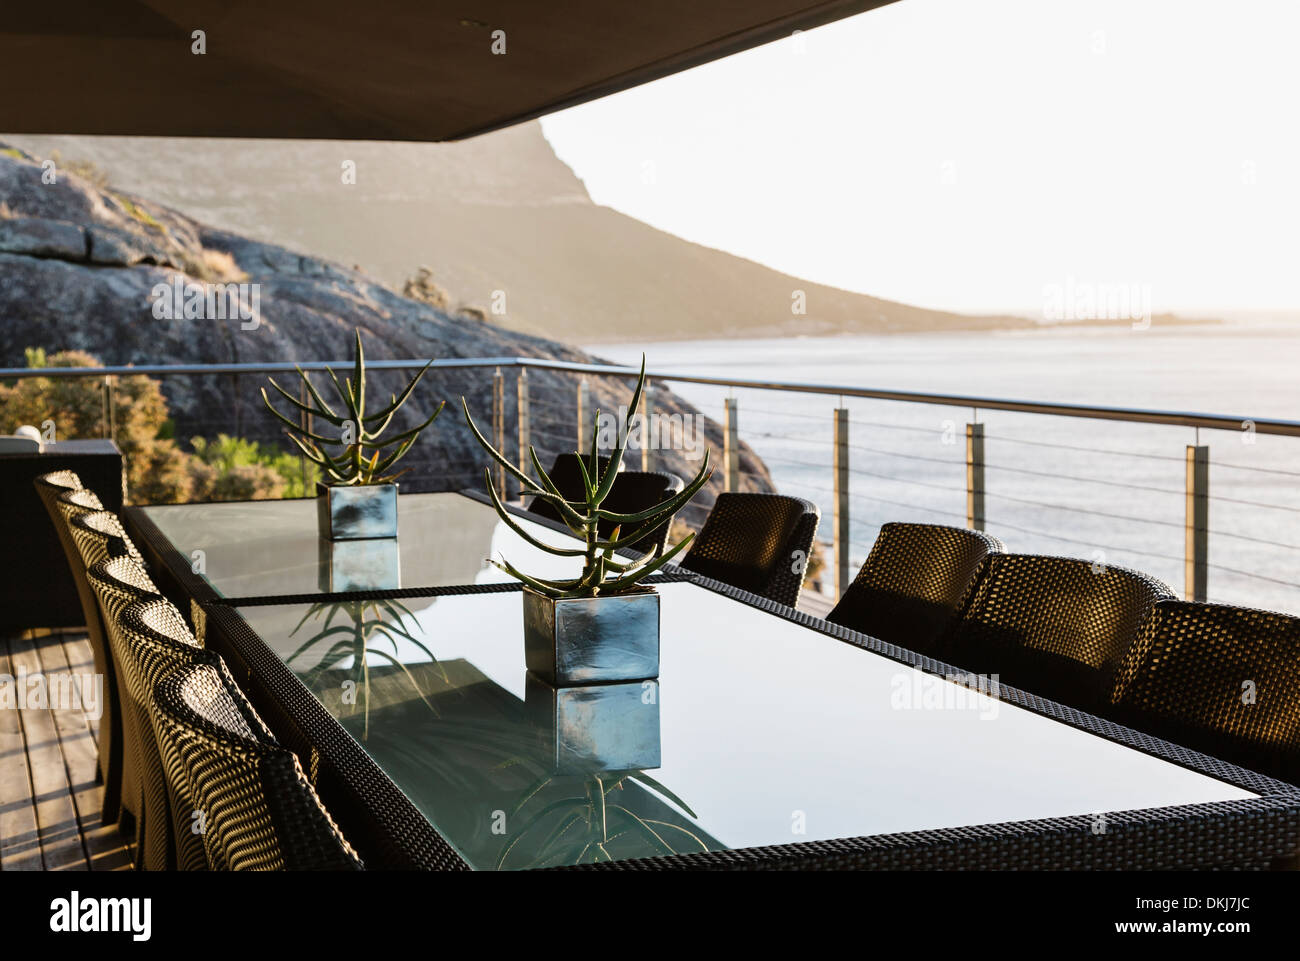 Dining table on luxury patio overlooking ocean Stock Photo